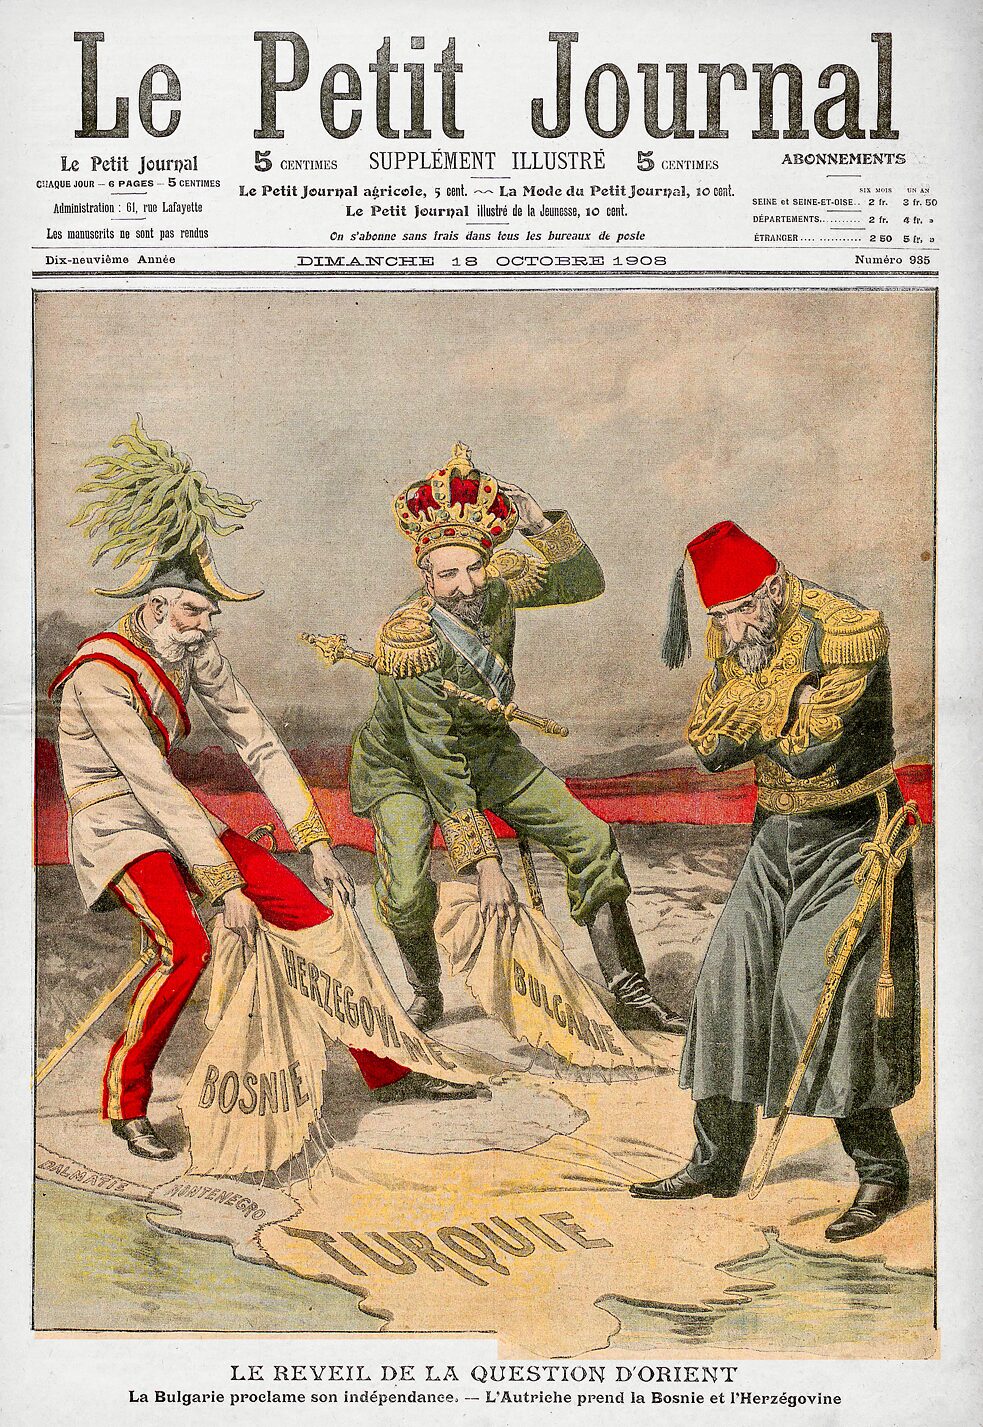 Diese Karikatur auf der Titelseite der französischen Zeitschrift „Le Petit Journal“ reagiert auf die Ausrufung der Unabhängigkeit Bulgariens und die administrative Annexion Bosniens durch Österreich-Ungarn im Jahr 1908. 